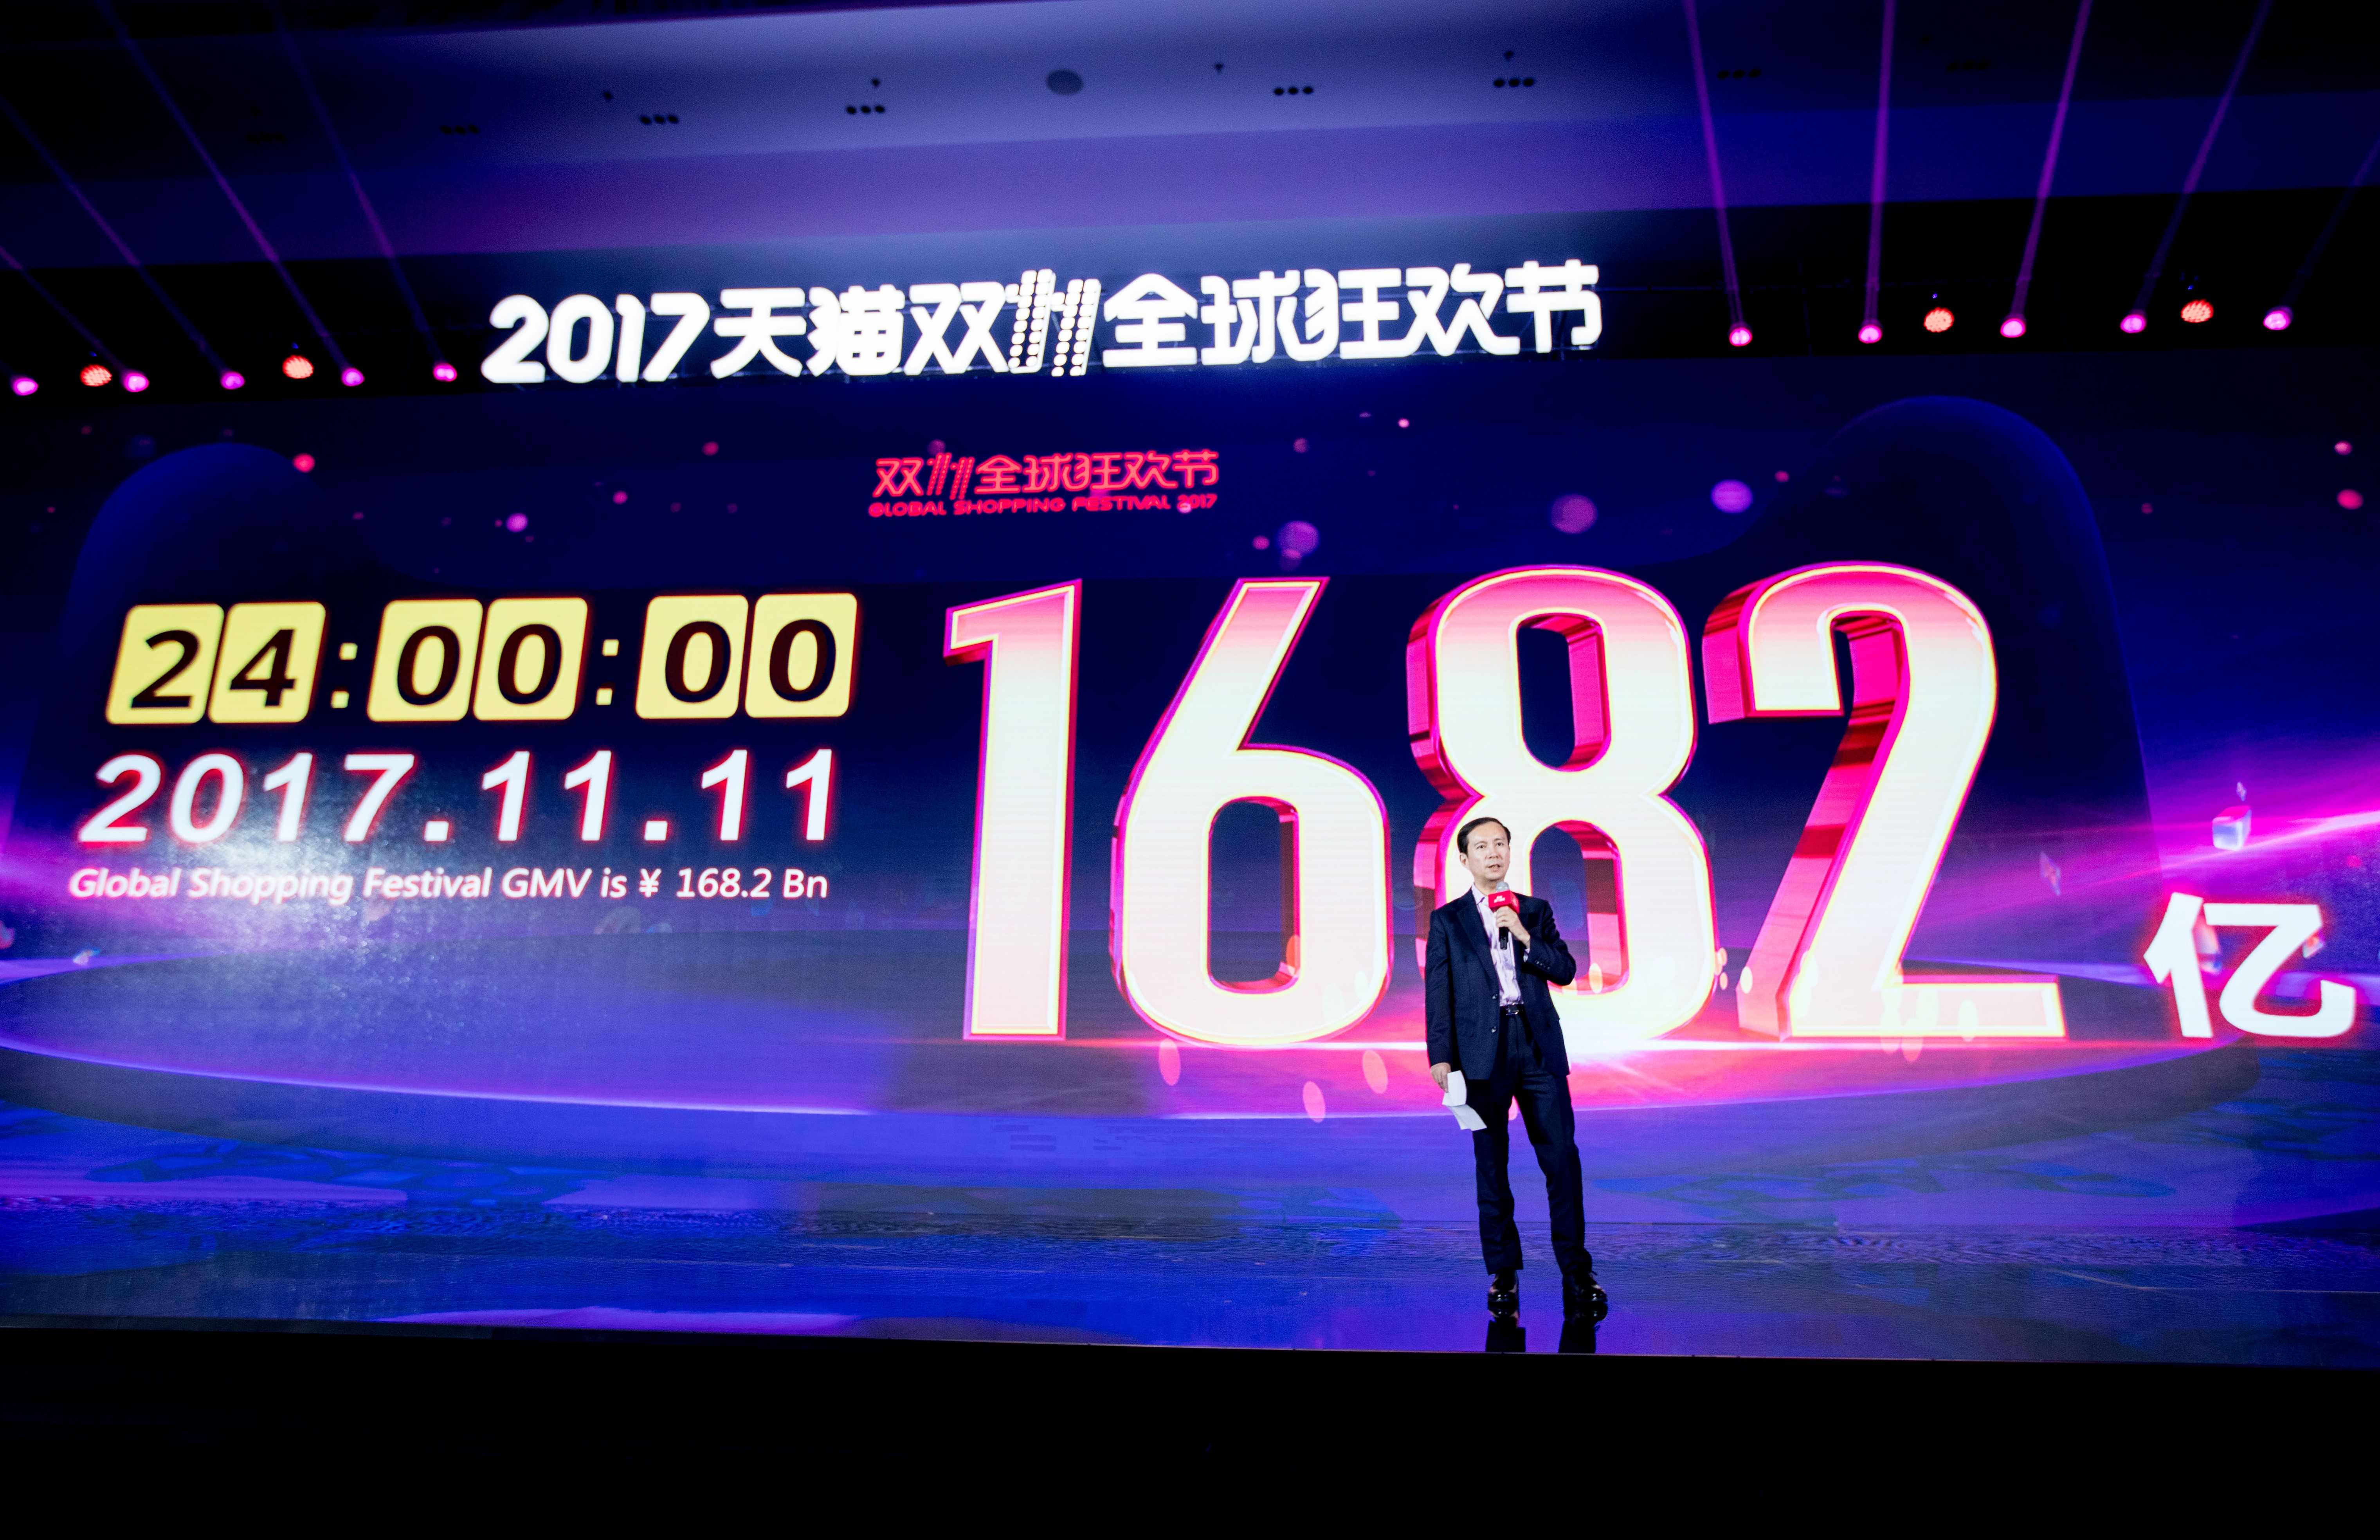 مبيعات شركة "على بابا" تصل لـ168 مليار يوان خلال يوم واحد